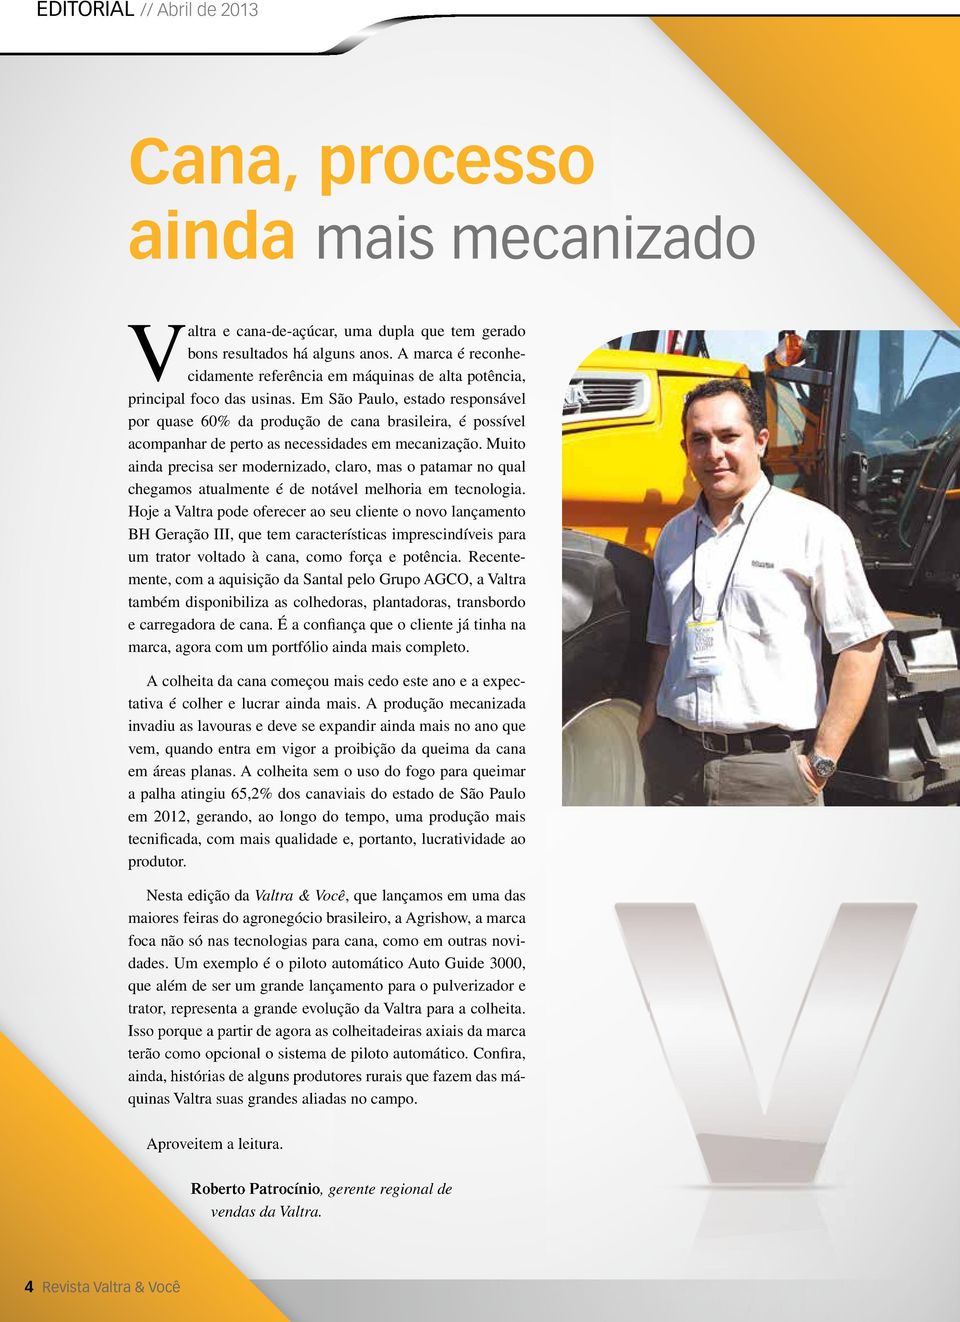 Em São Paulo, estado responsável por quase 60% da produção de cana brasileira, é possível acompanhar de perto as necessidades em mecanização.